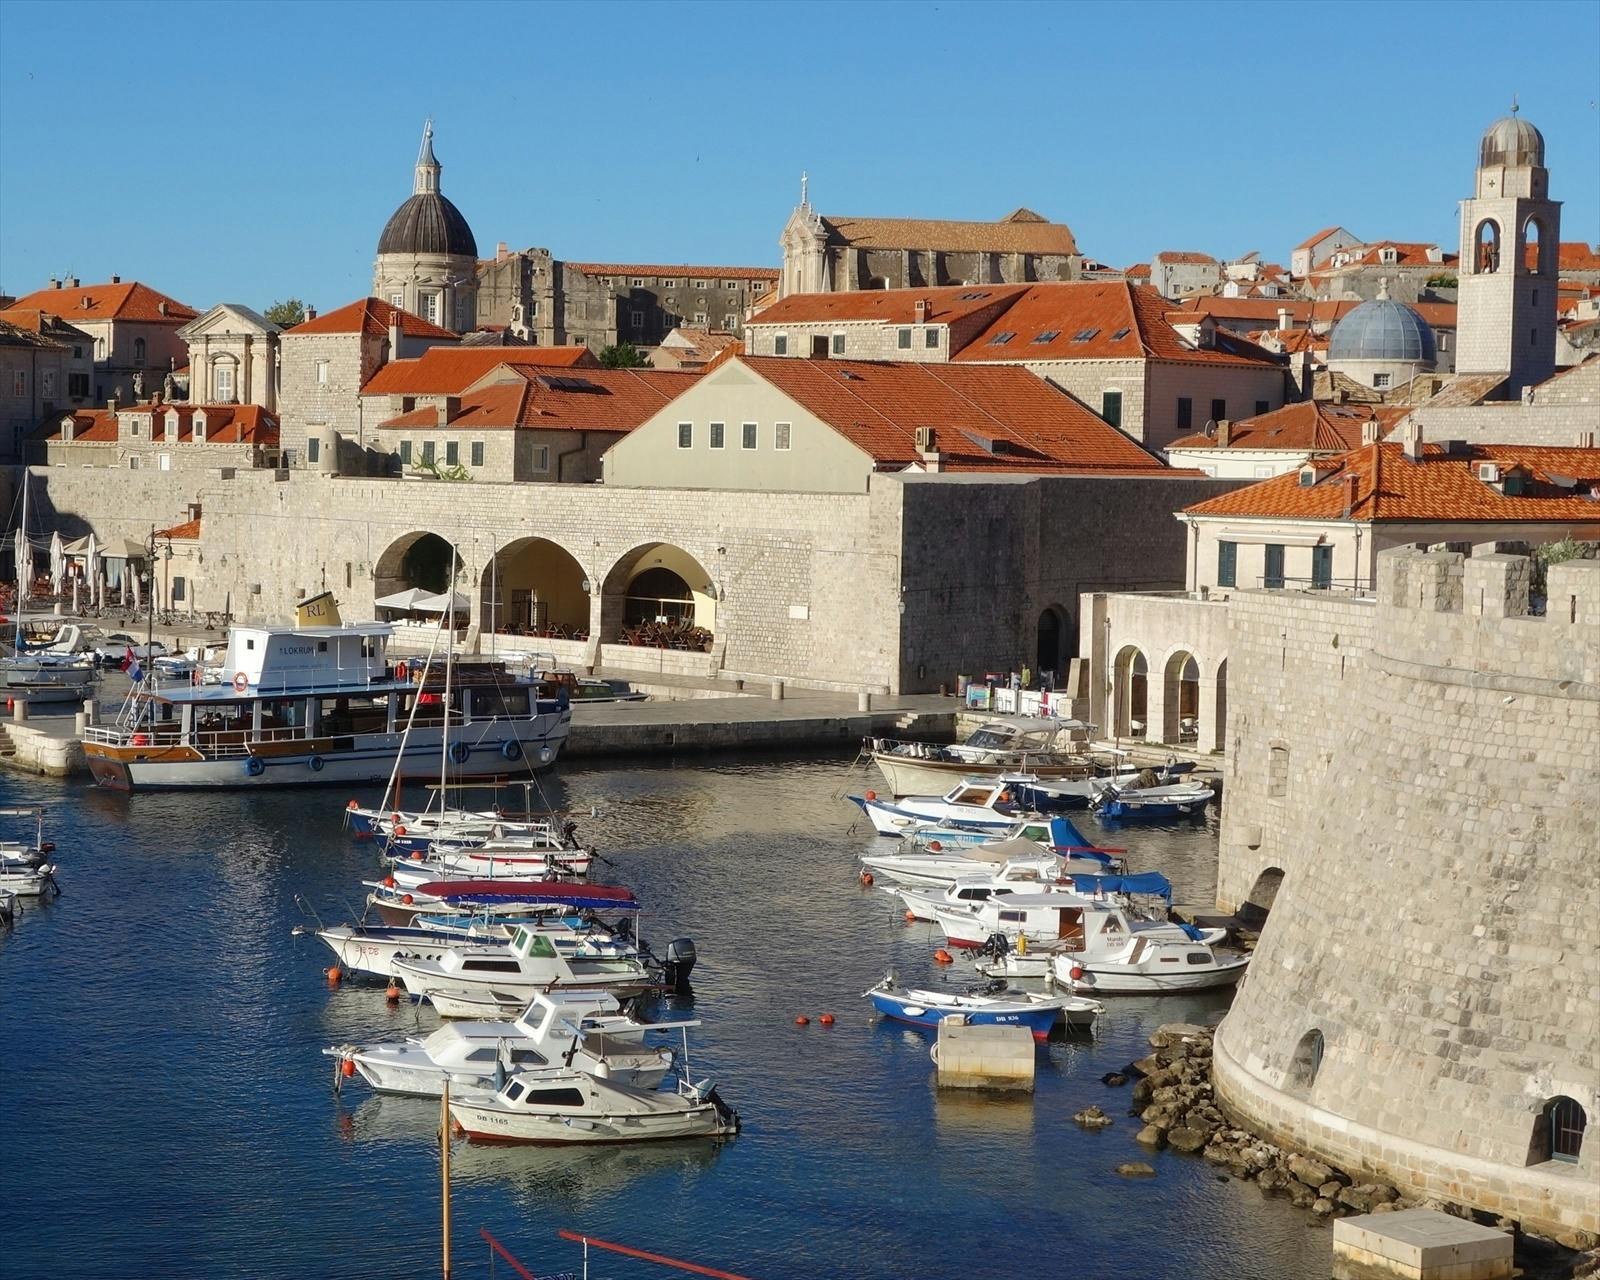 Dubrovnik private panorama tour by car or van